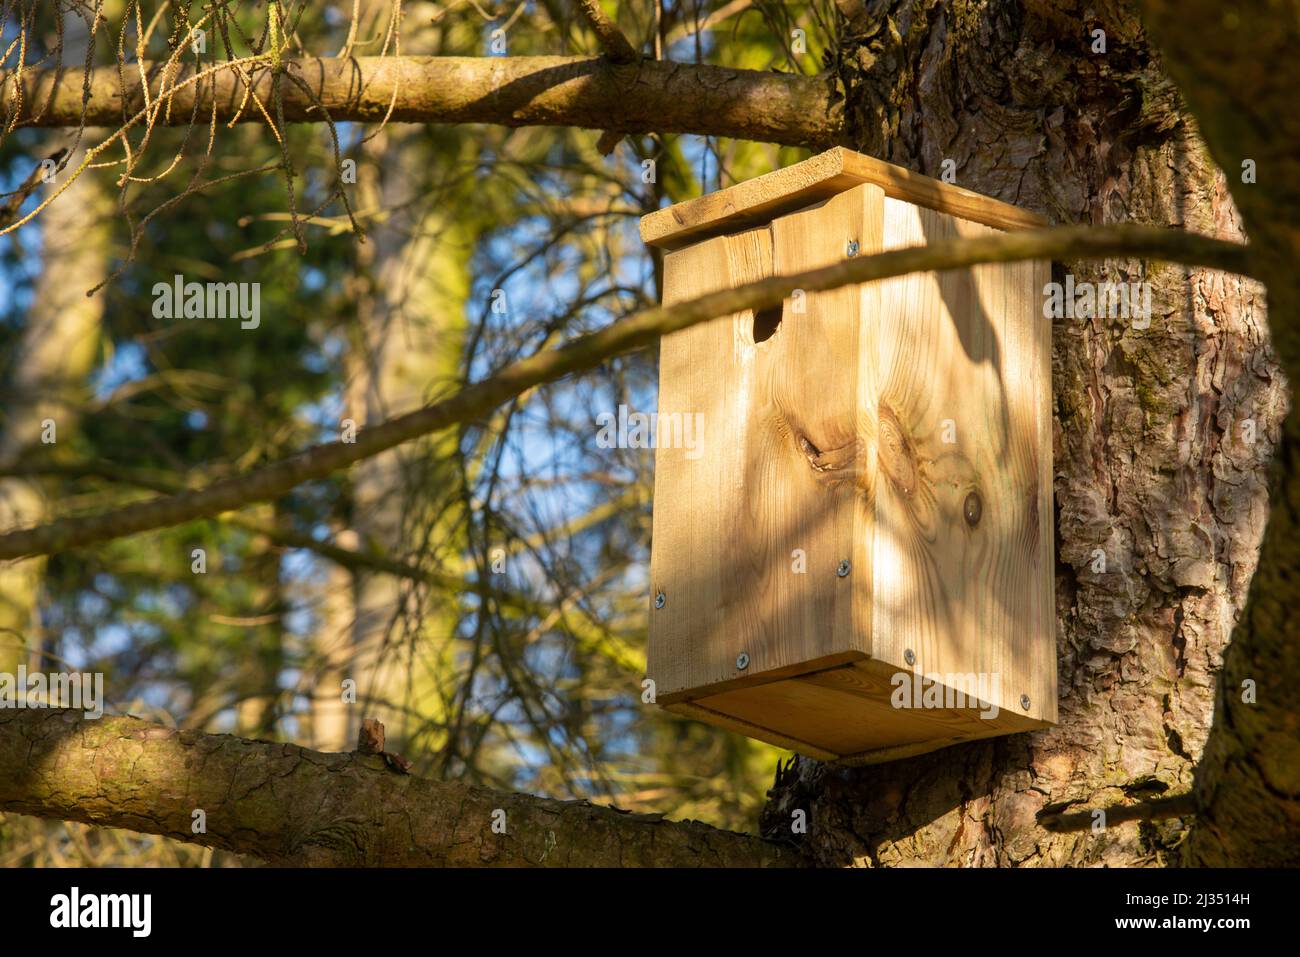 nido de pájaros de madera contra el tronco del árbol Foto de stock